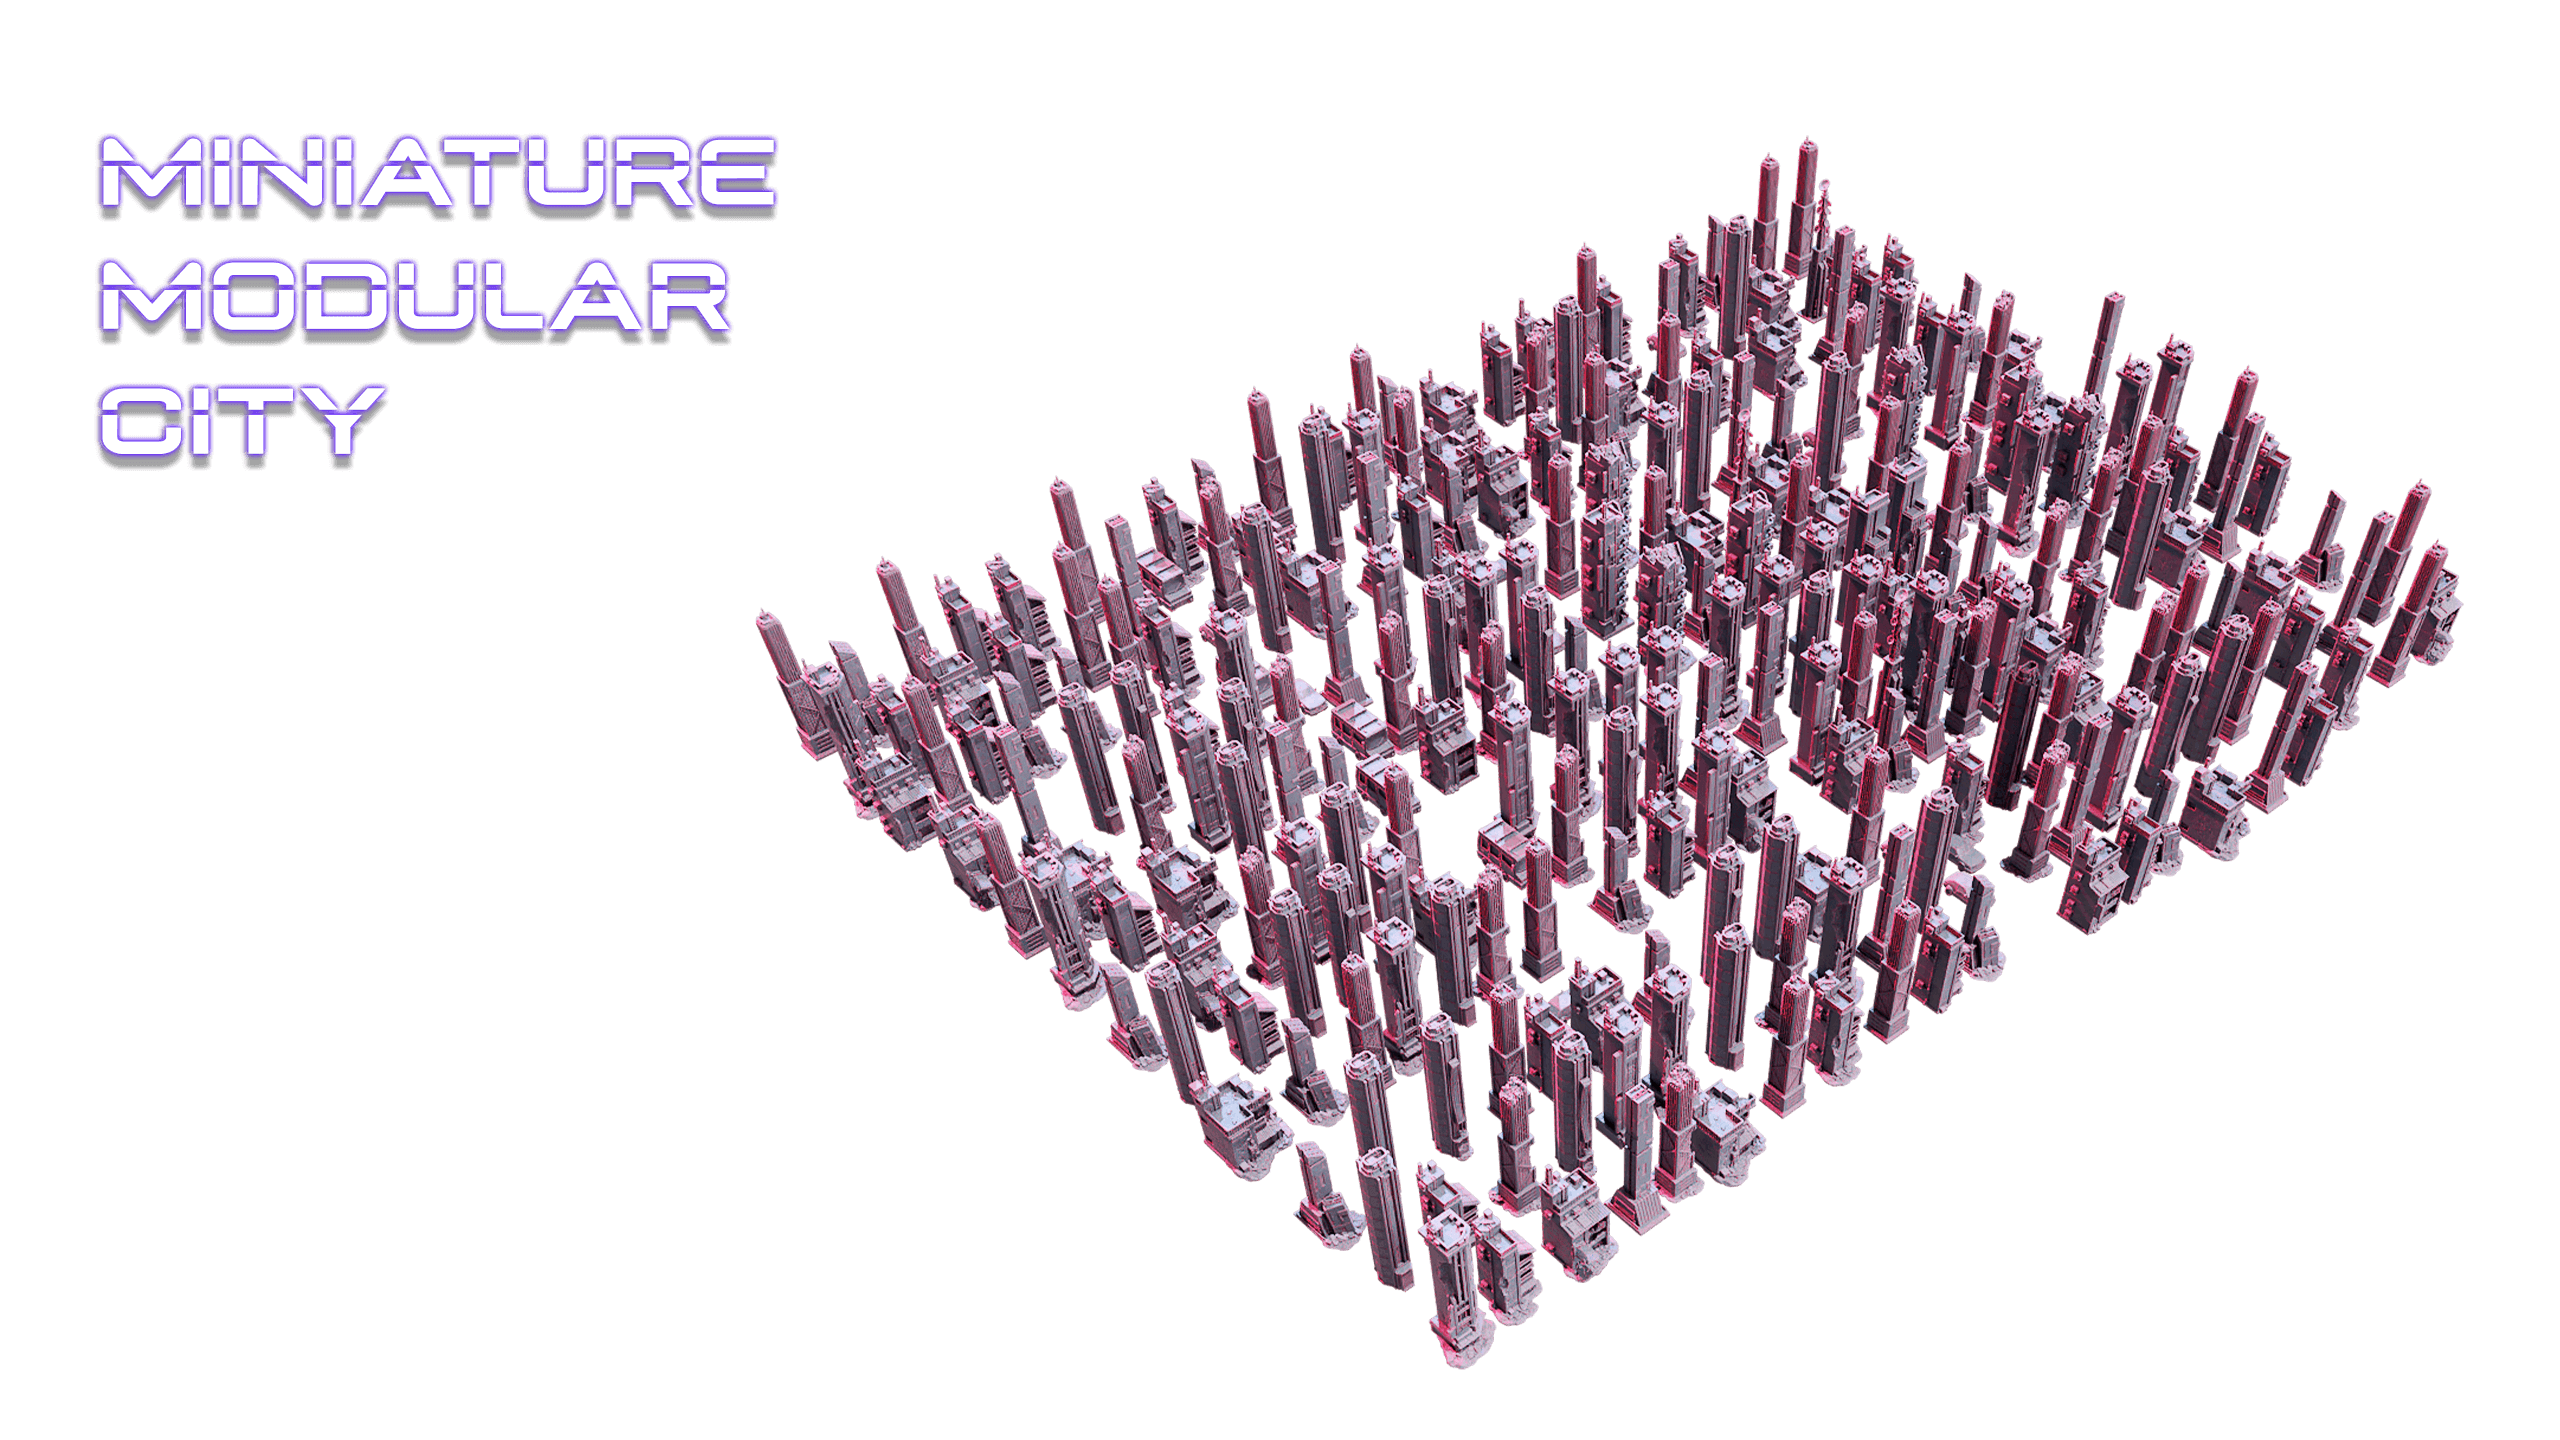 Miniature Modular City